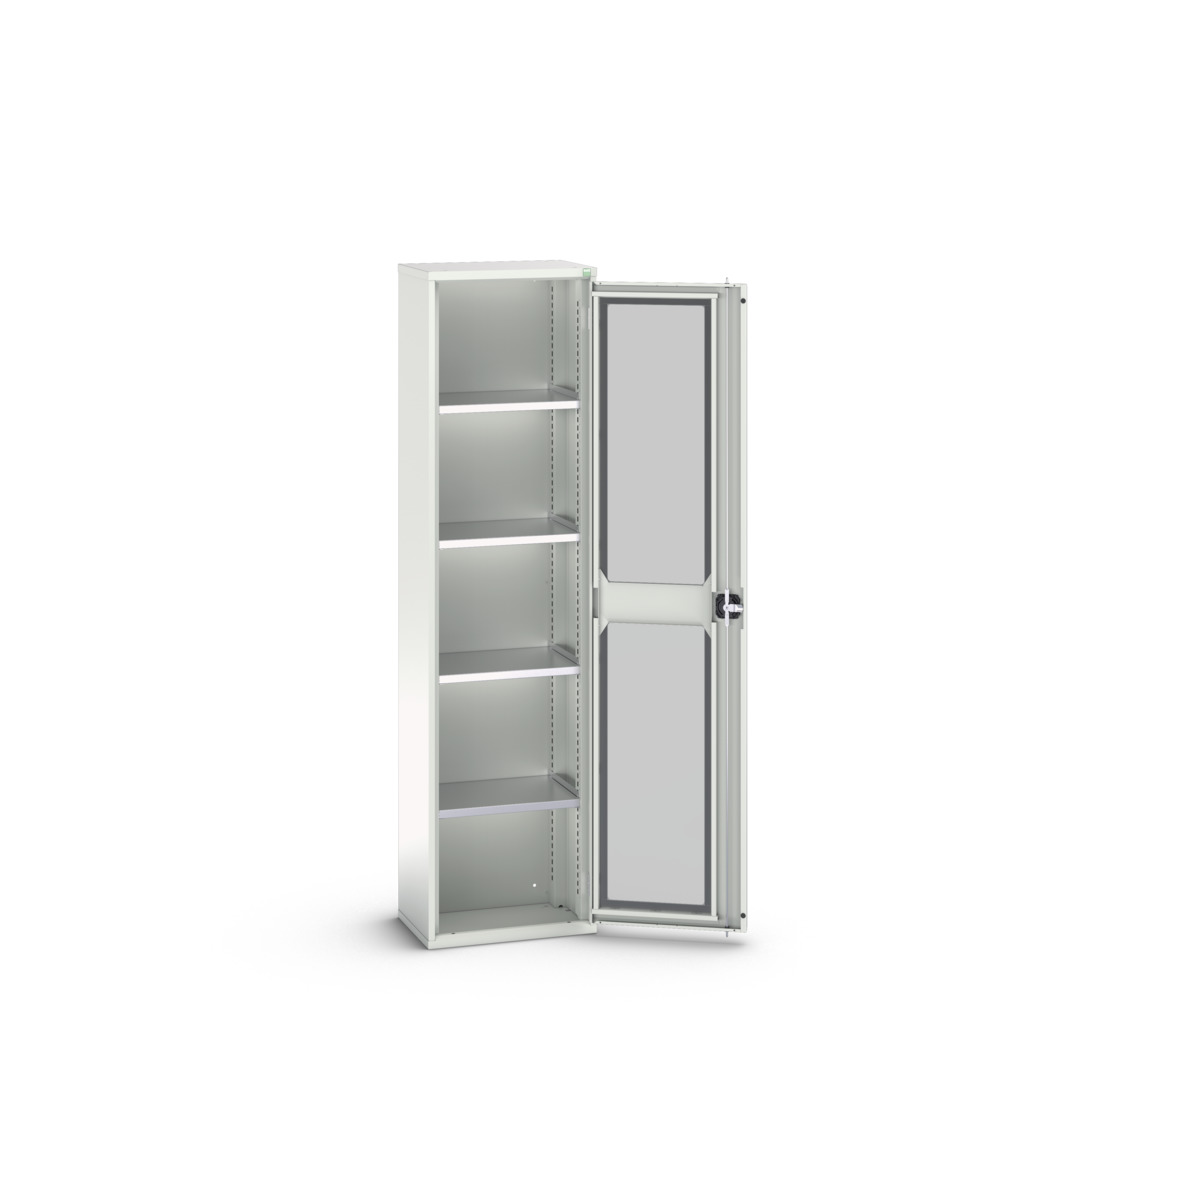 16926073.16 - verso window door cupboard